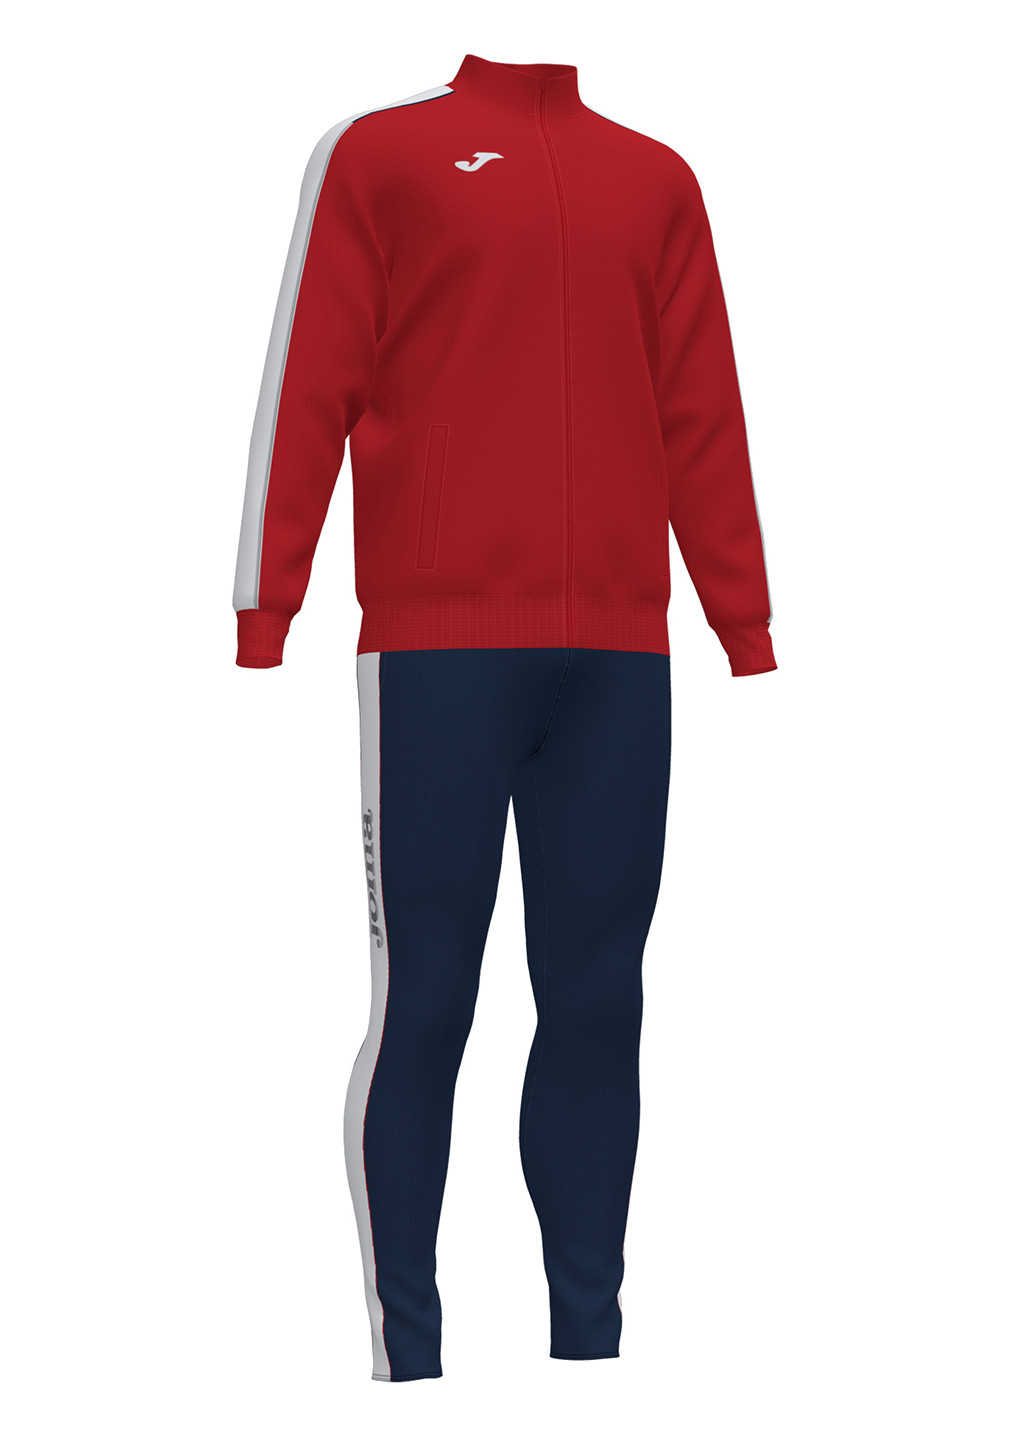 Комбинированный демисезонный костюм (олимпийка, брюки) брючный Joma